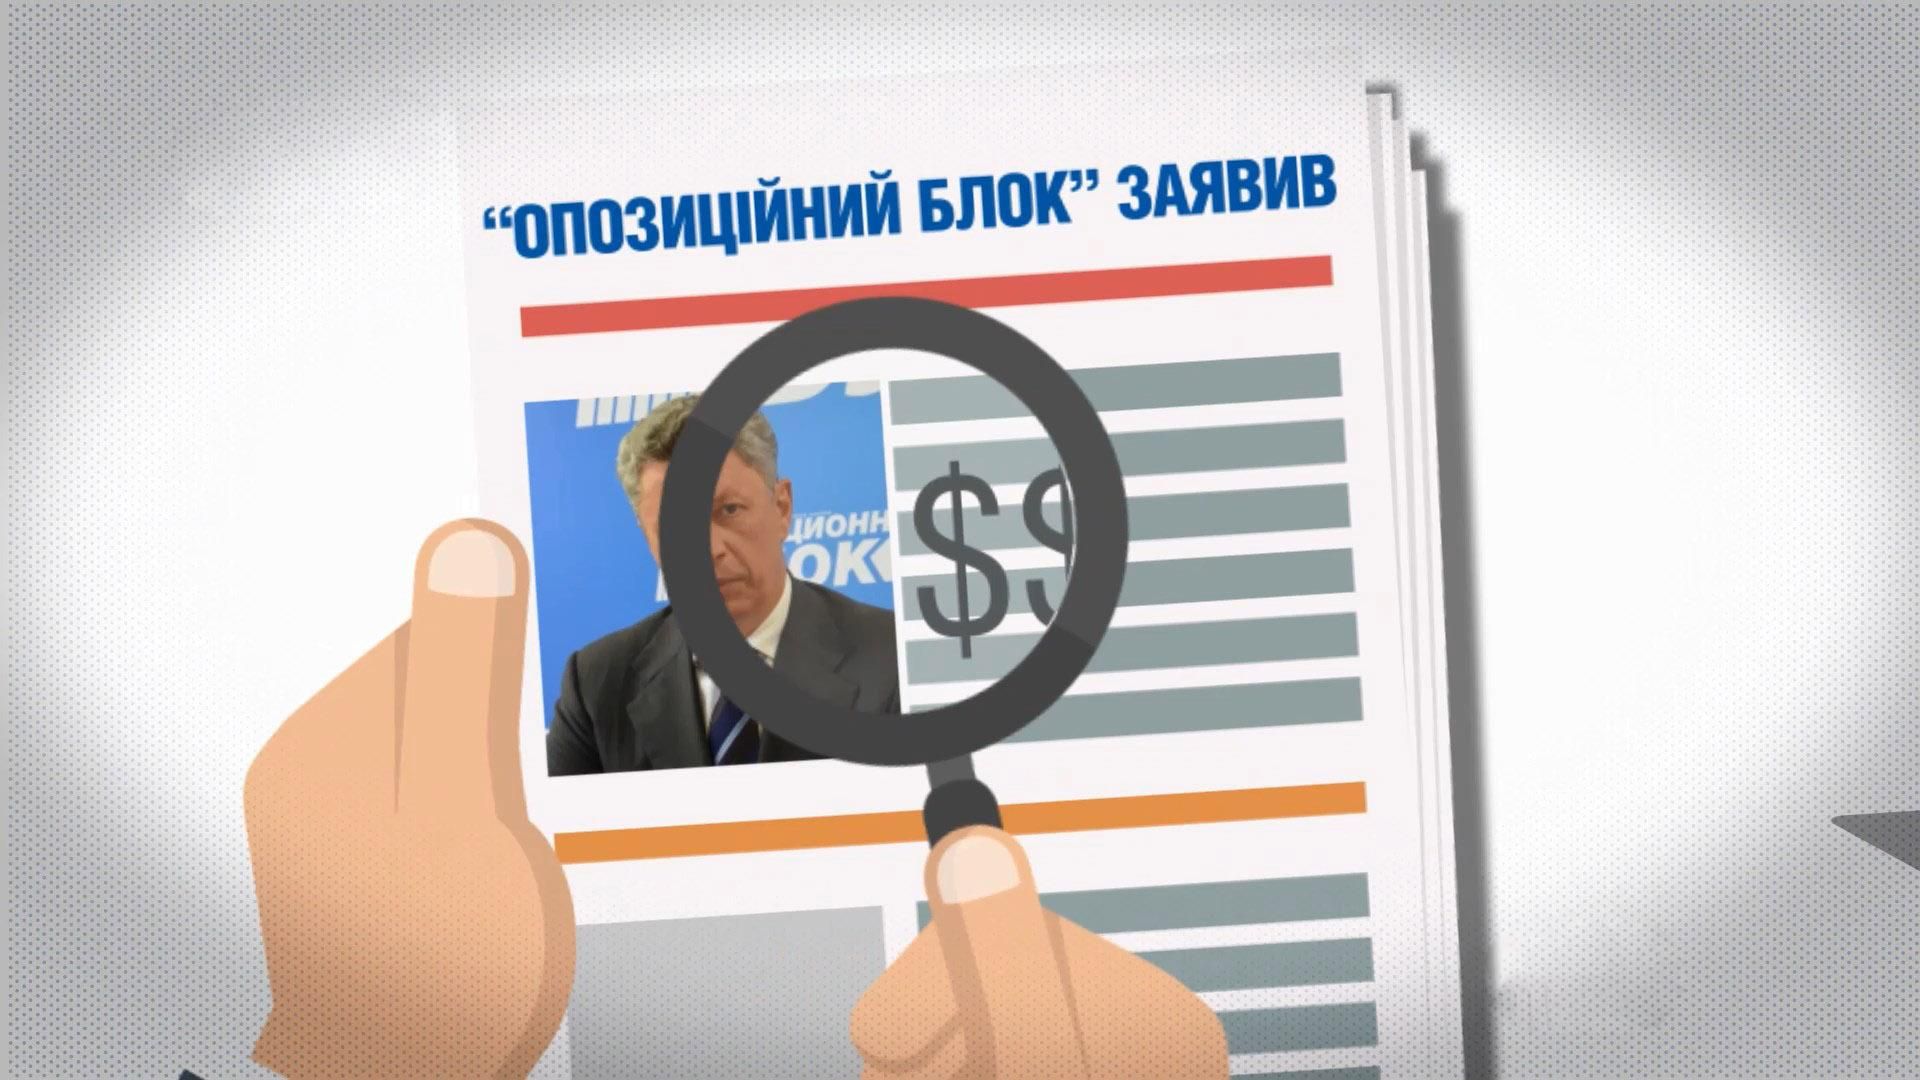 Джинса в Украине: какие политические силы активно заказывают себе рекламу